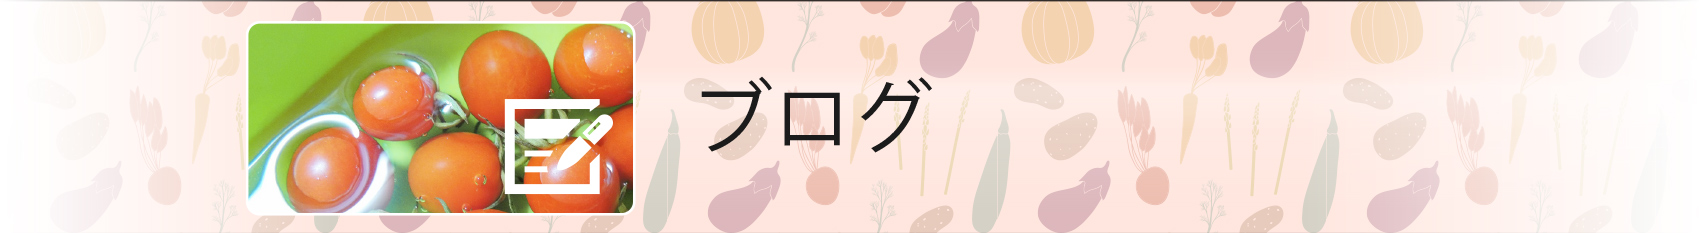 愛知県や岐阜県、三重県のカット野菜の情報などを発信しているブログ